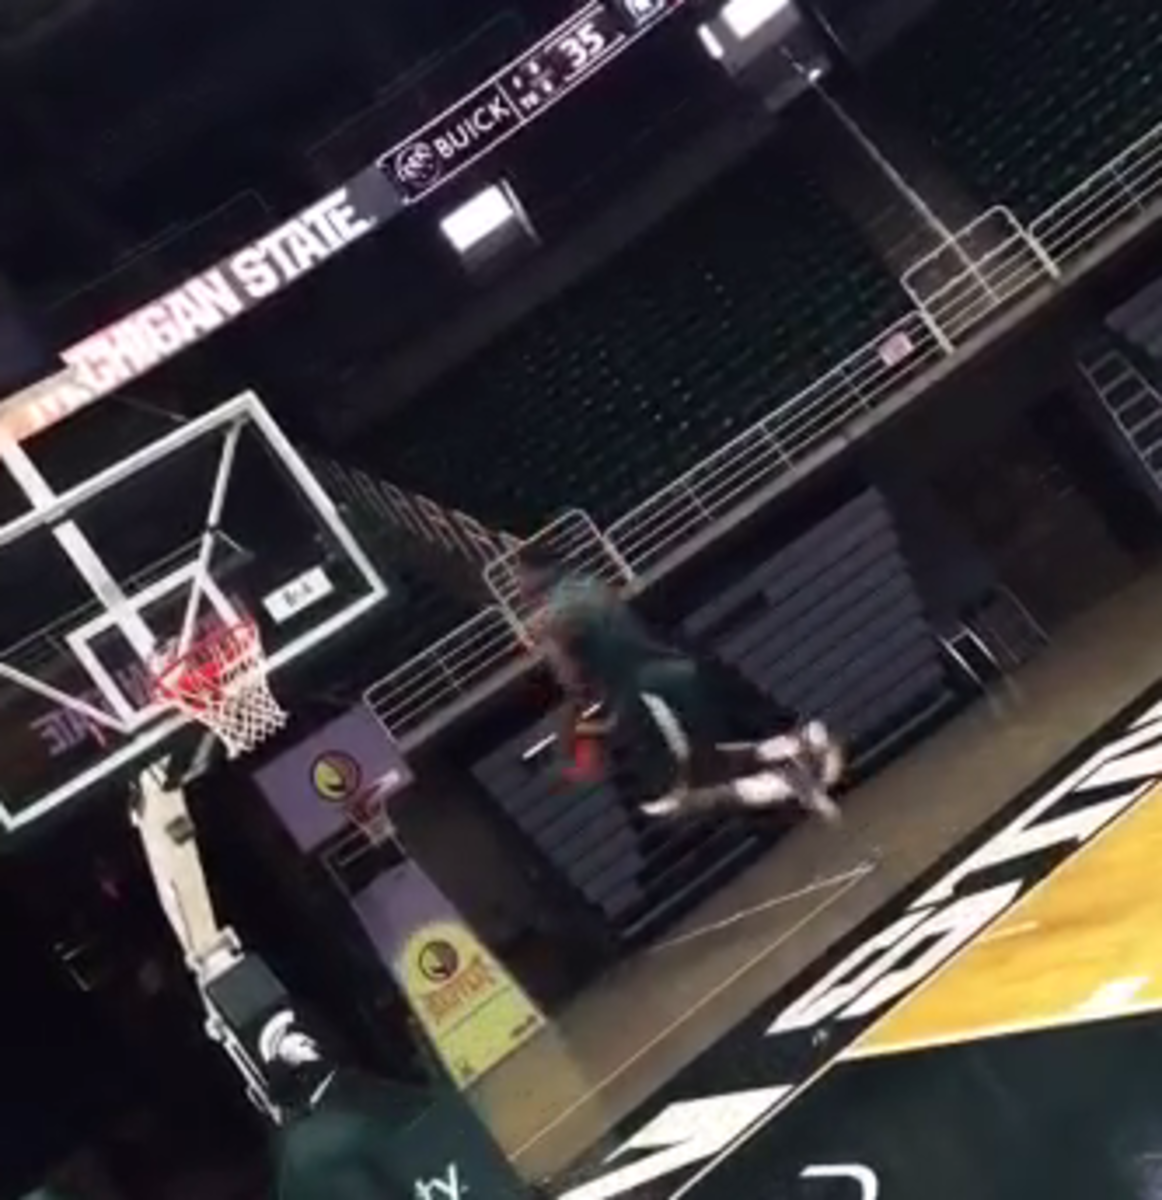 Michigan State Eron Harris throws down a ridiculous dunk.